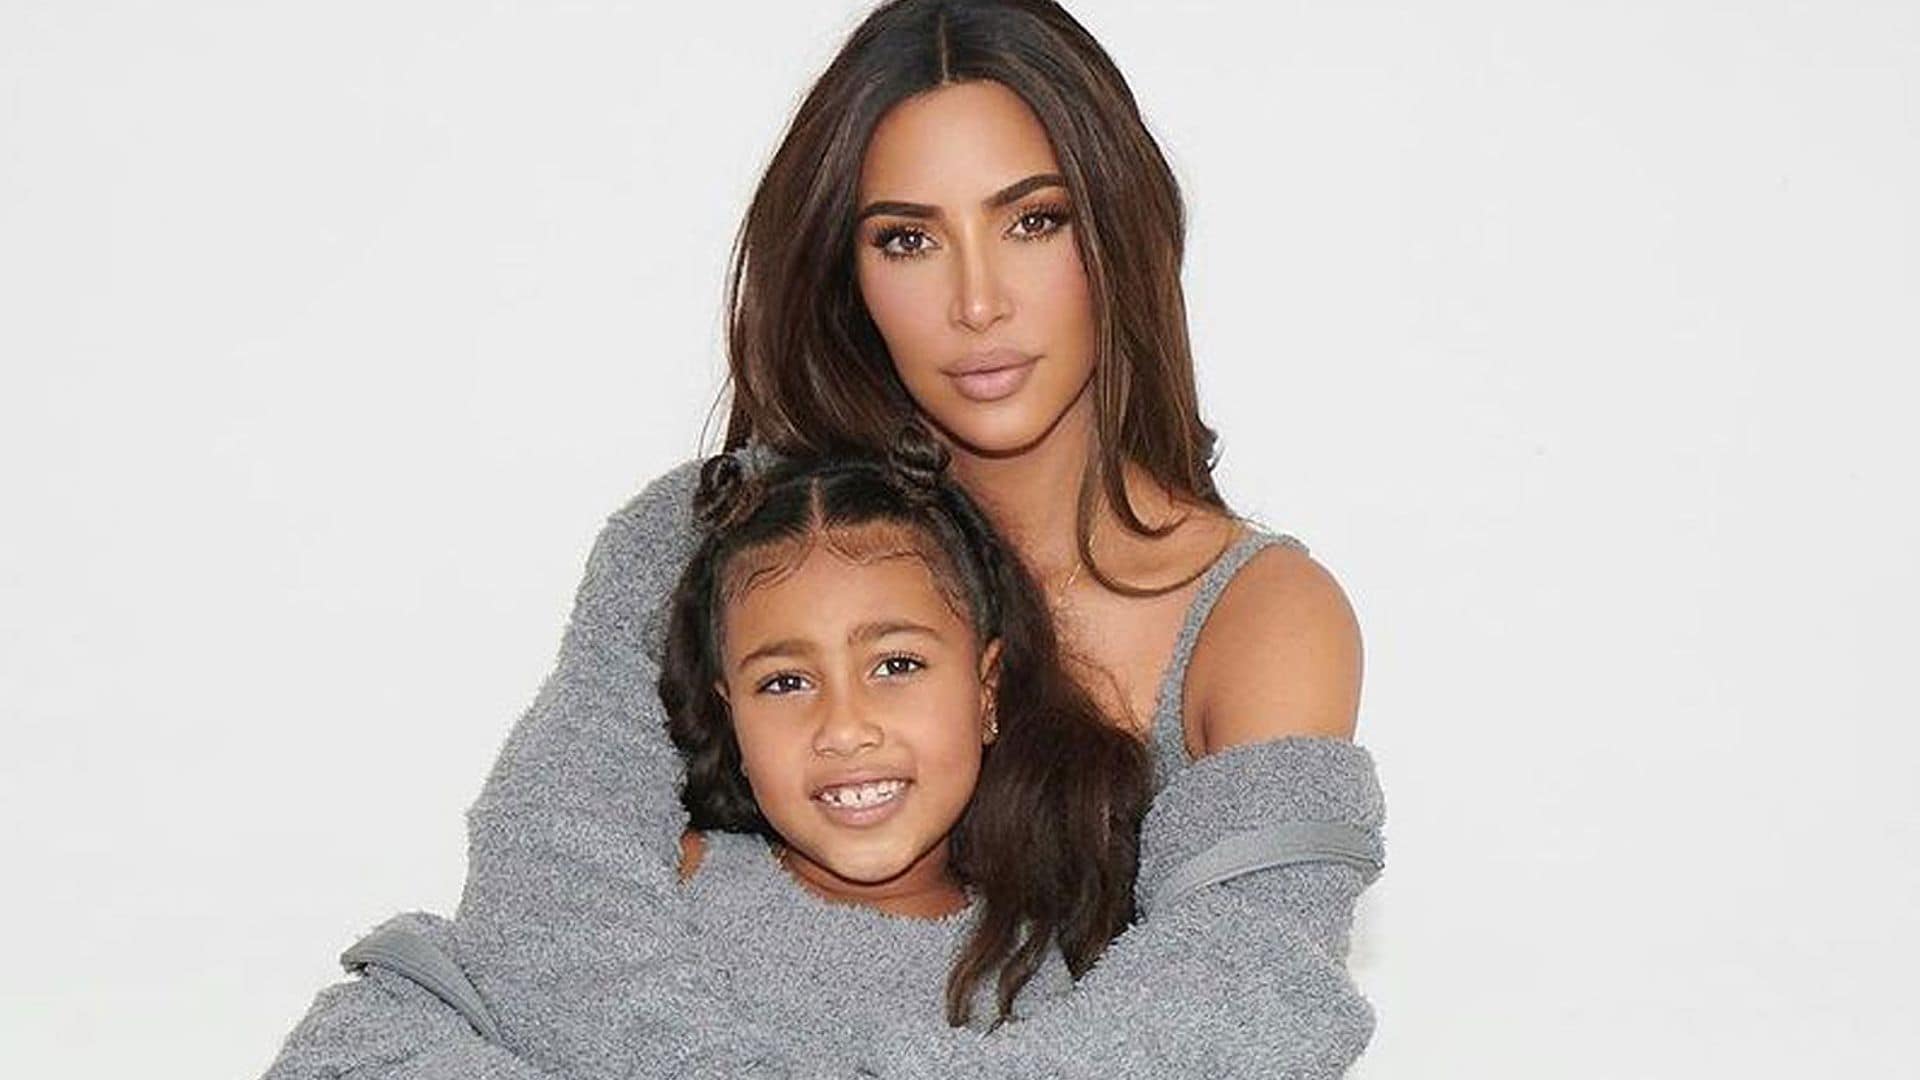 ¿Seguirá los pasos de su padre? North West, hija de Kim Kardashian y Kanye West, sorprende cantando